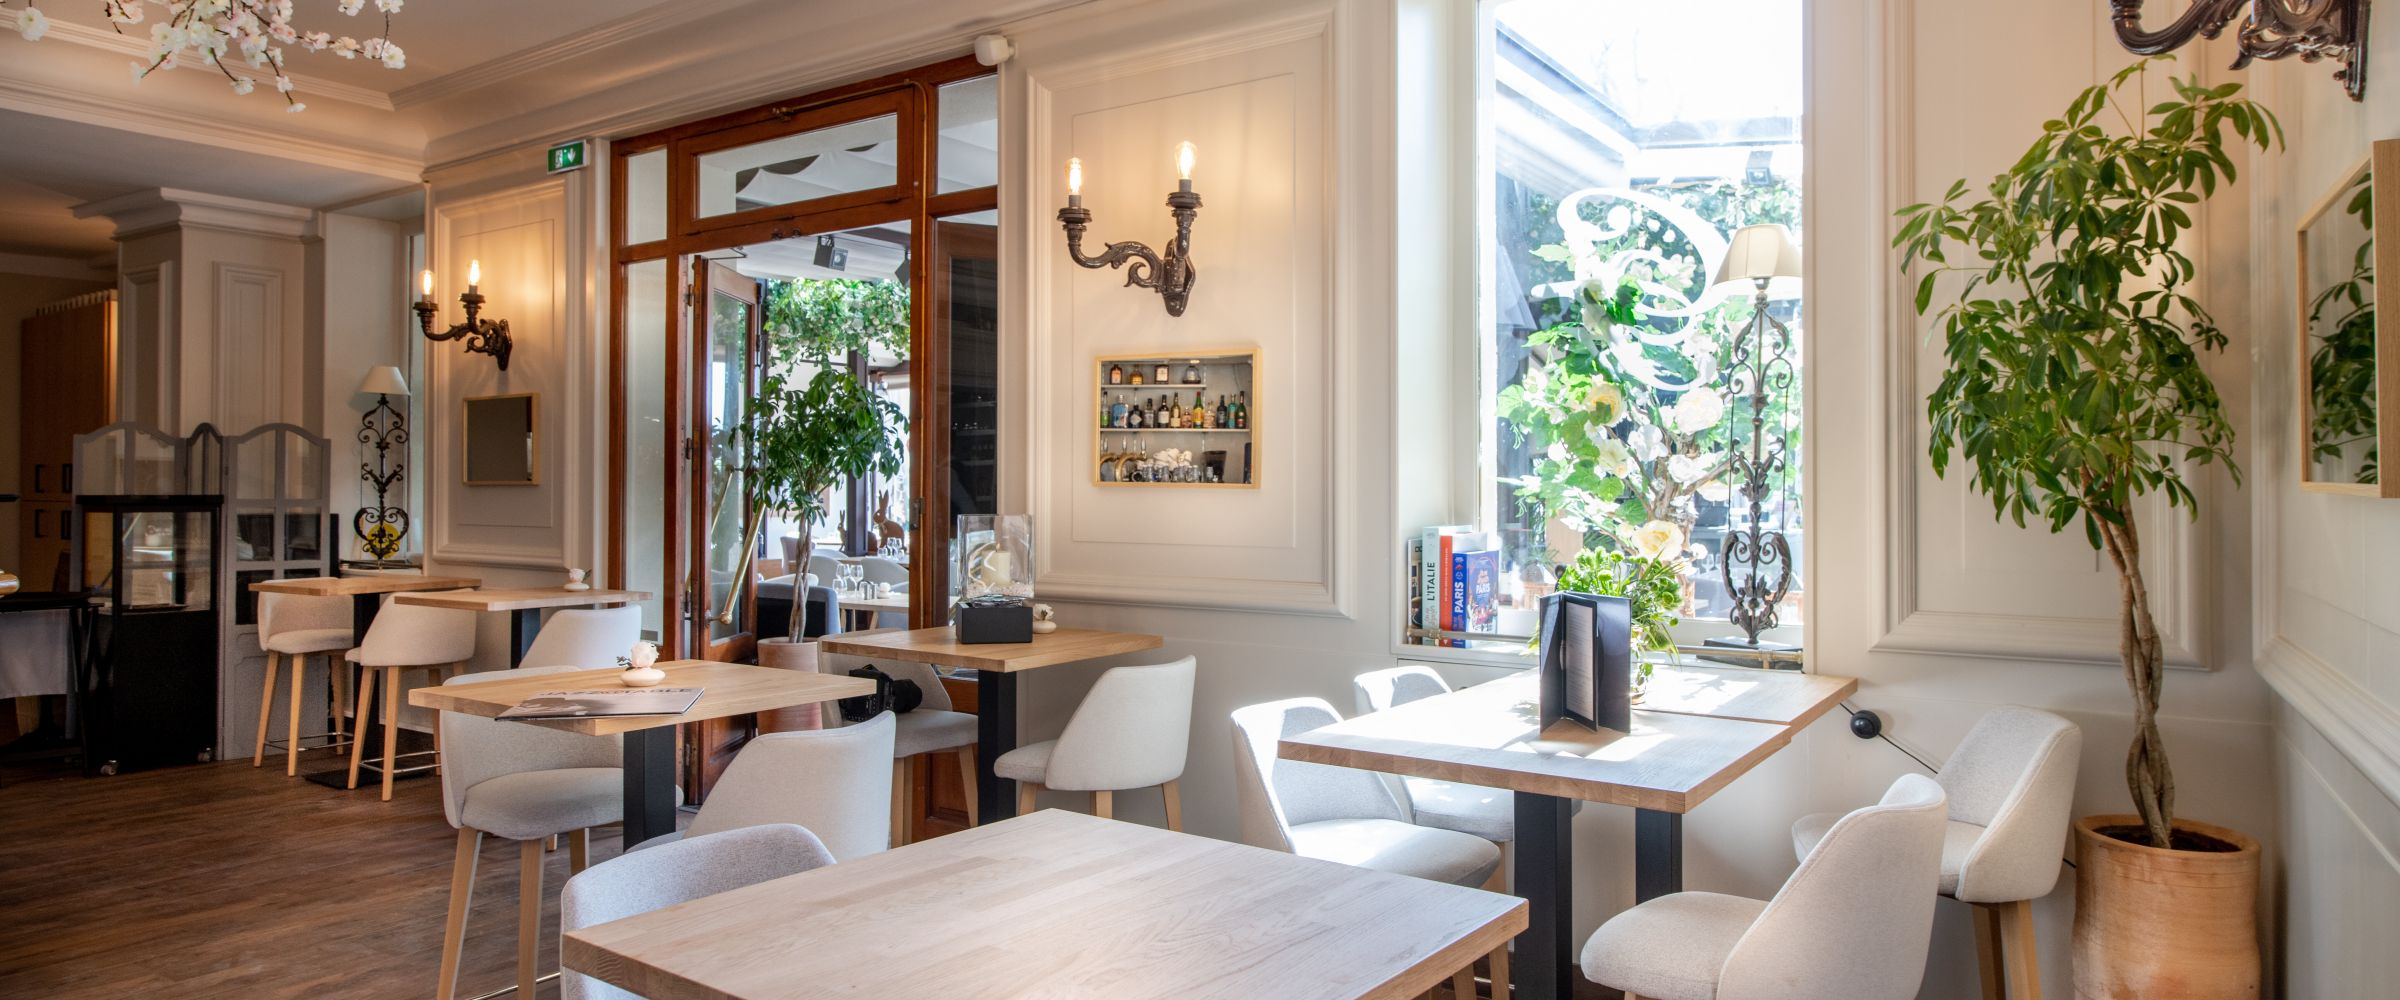 Le Café de France - Restaurant bistronomique méditerranéen